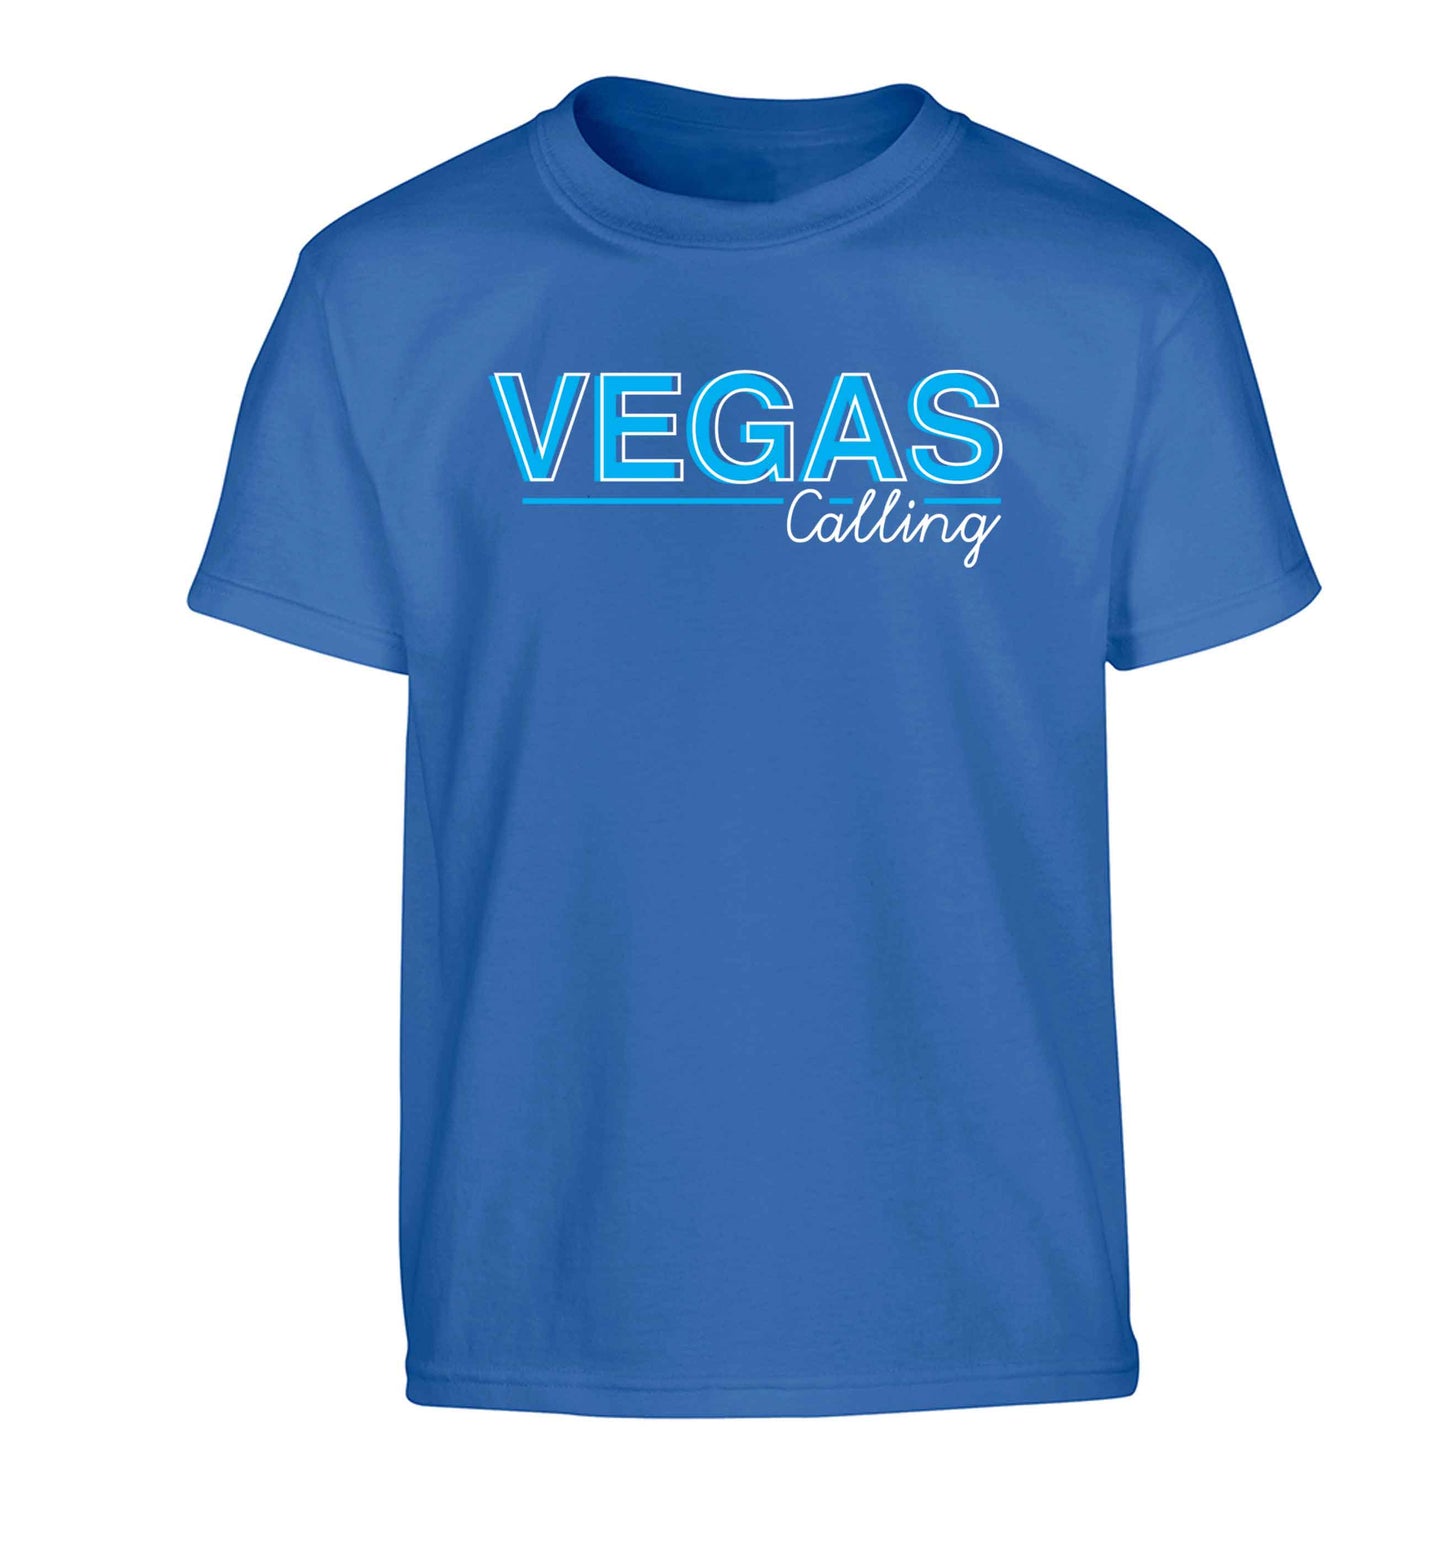 Vegas calling Children's blue Tshirt 12-13 Years